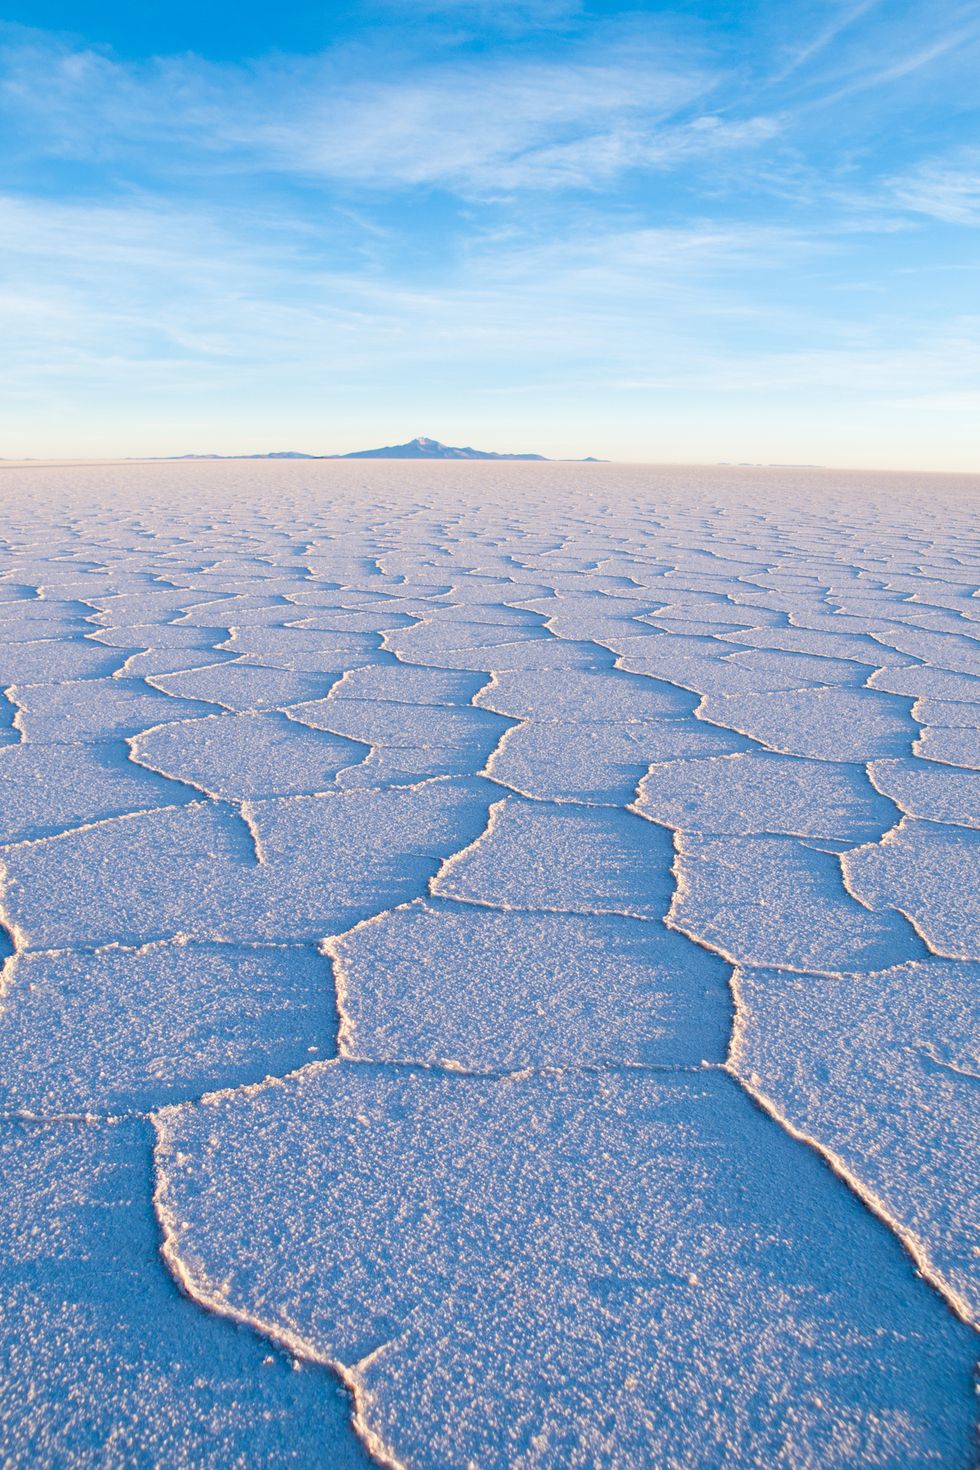 Căn hộ muối Uyuni, Bolivia Khi một hồ nước thời tiền sử khô cạn, nó đã để lại những bãi muối đầy kinh hoàng này. Những hình thành muối trắng sáng khiến bạn có cảm giác gần như đang đi trên mây.